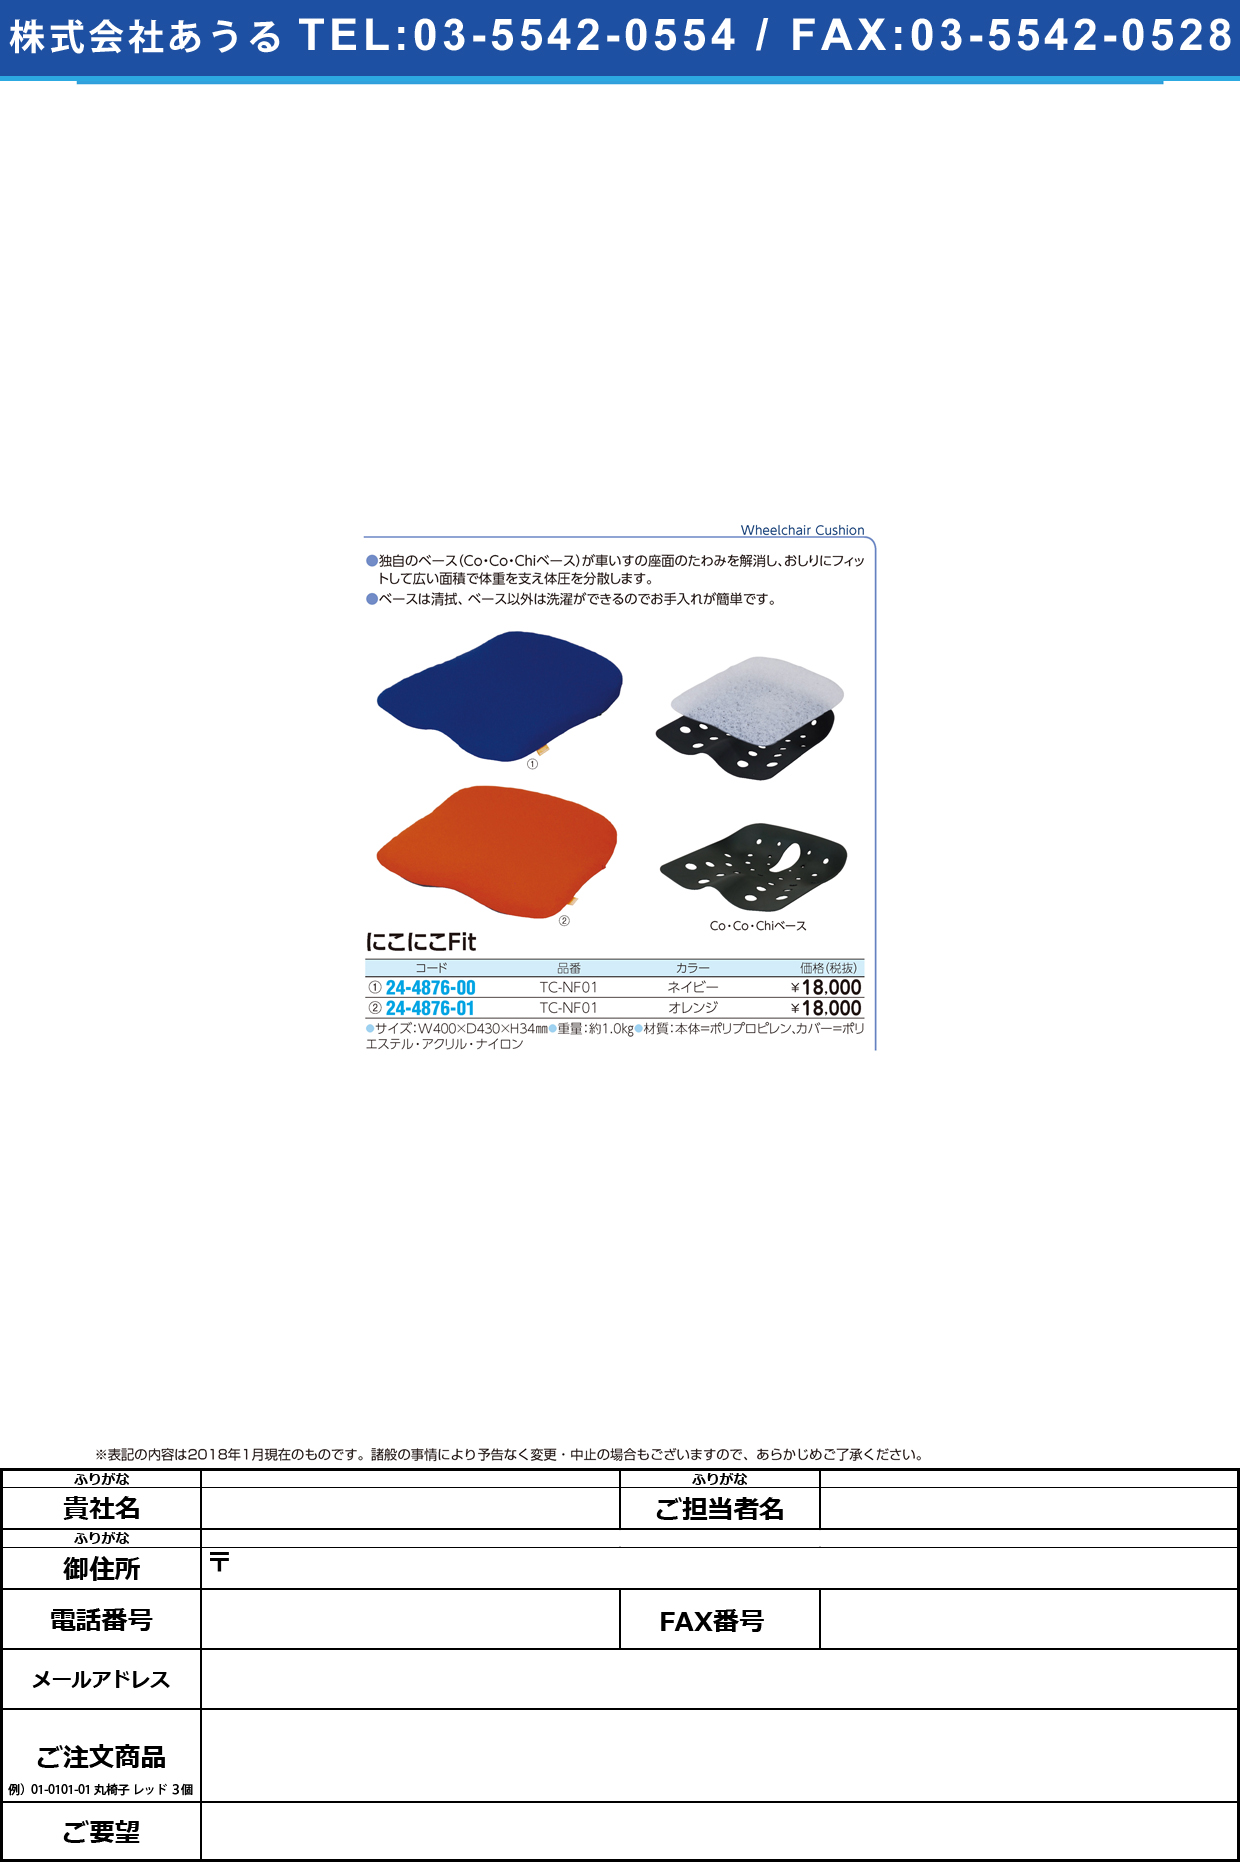 (24-4876-00)車いす用クッションにこにこＦｉｔ TC-NF01(ﾈｲﾋﾞｰ) ﾆｺﾆｺFIT(タカノ)【1個単位】【2018年カタログ商品】